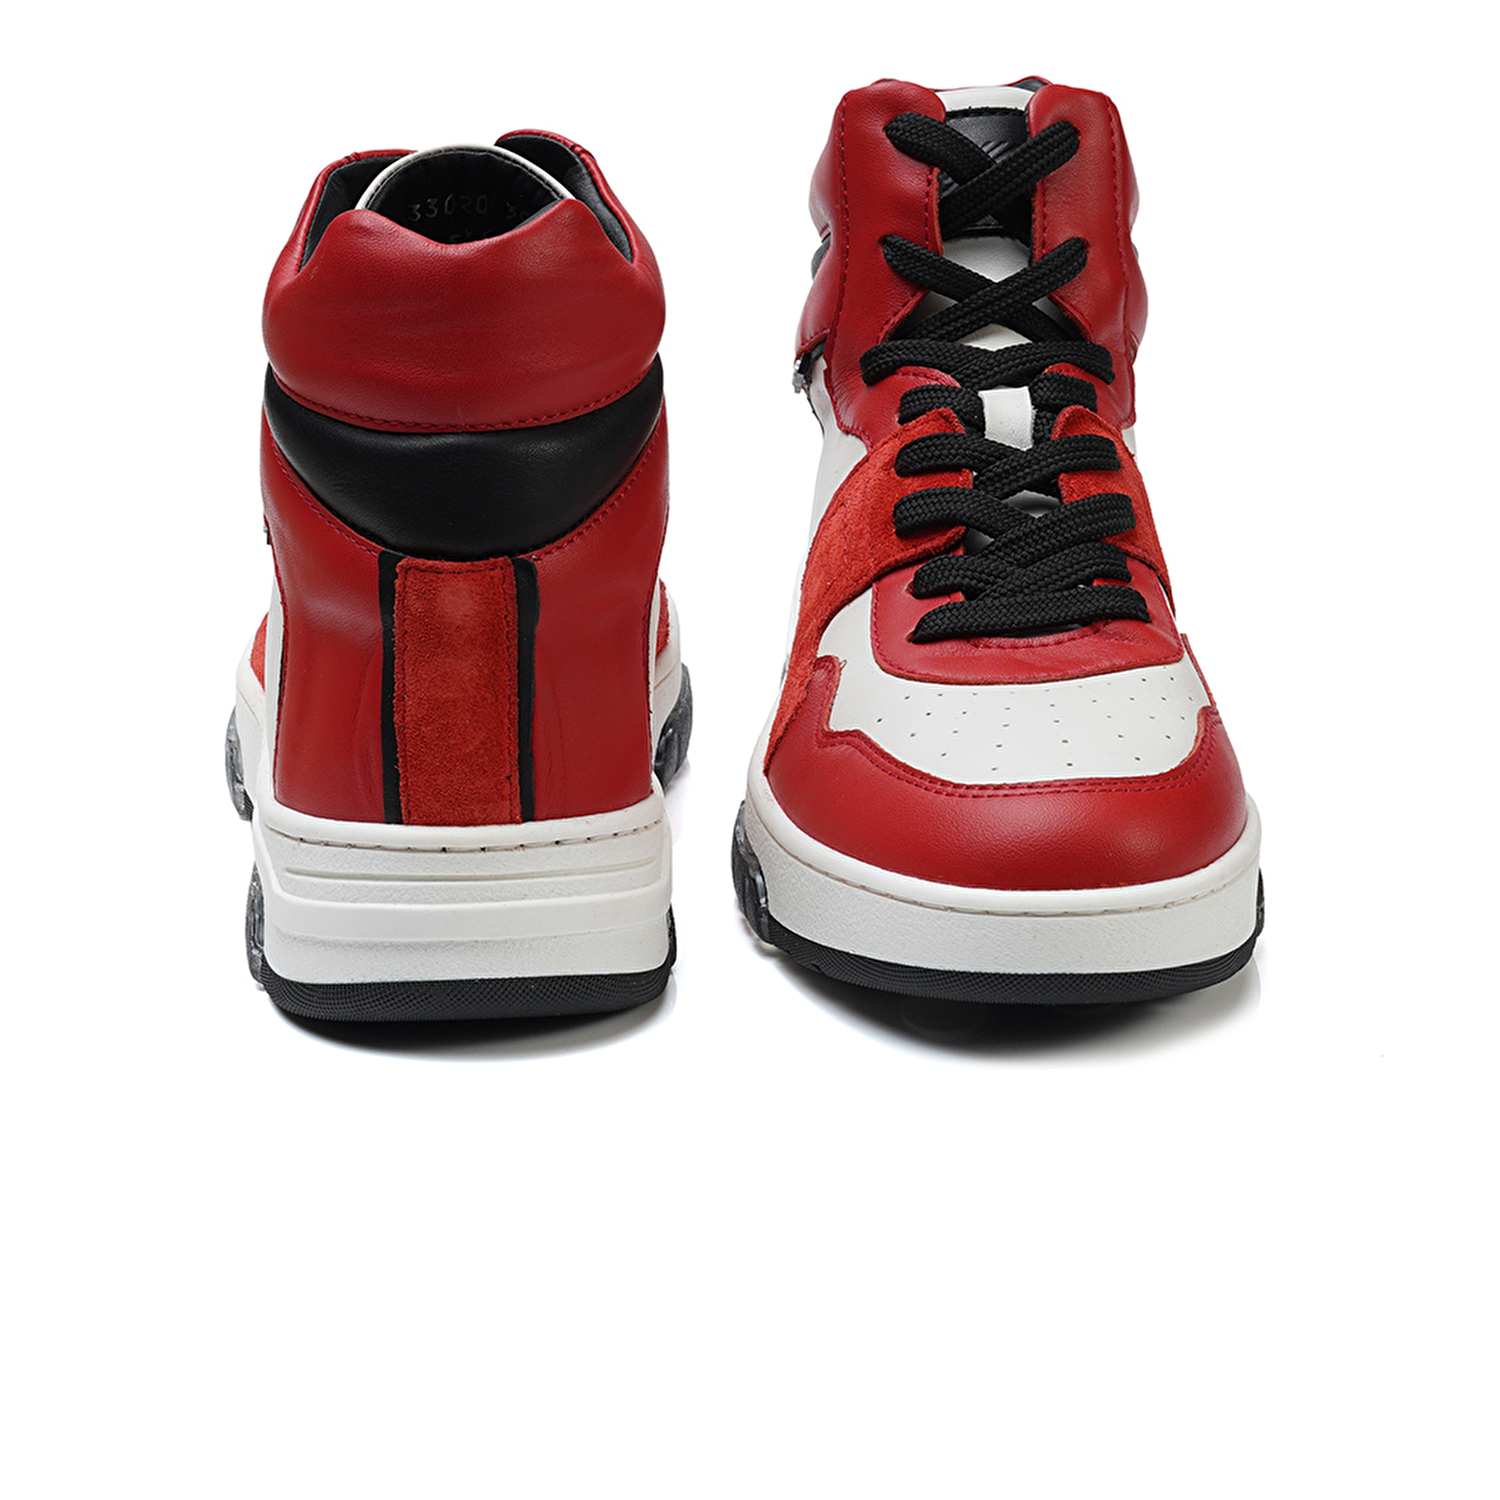 Kadın Beyaz Kırmızı Hakiki Deri Sneaker Bot 3K2SB33020-6